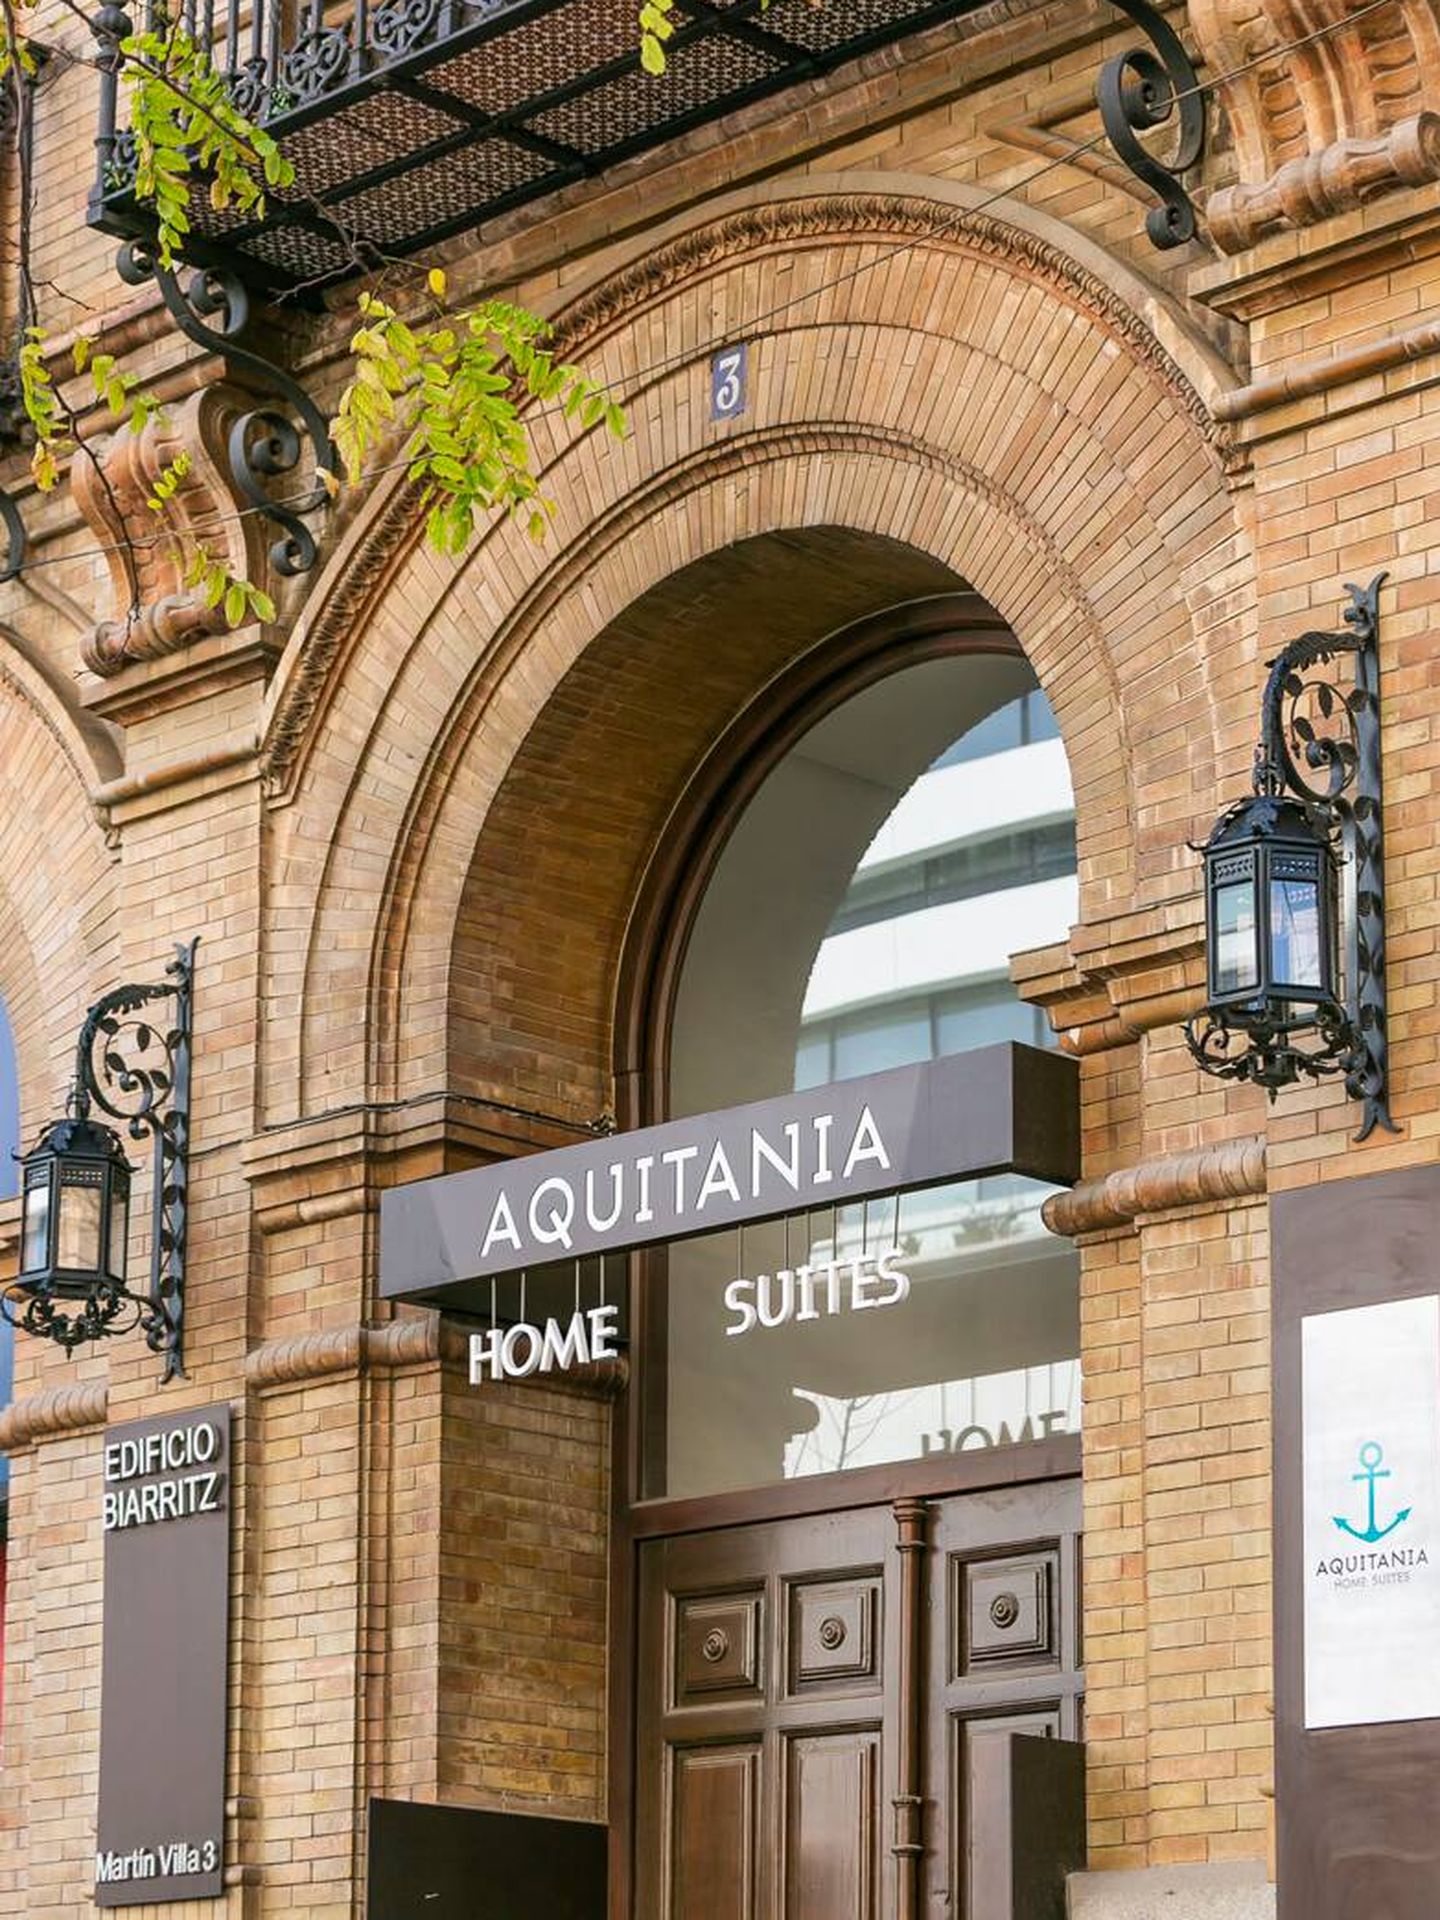 Aquitania Home Suites. C/ Martín Villa, 3 - Sevilla. Tel.: 955 287 499. (Cortesía)